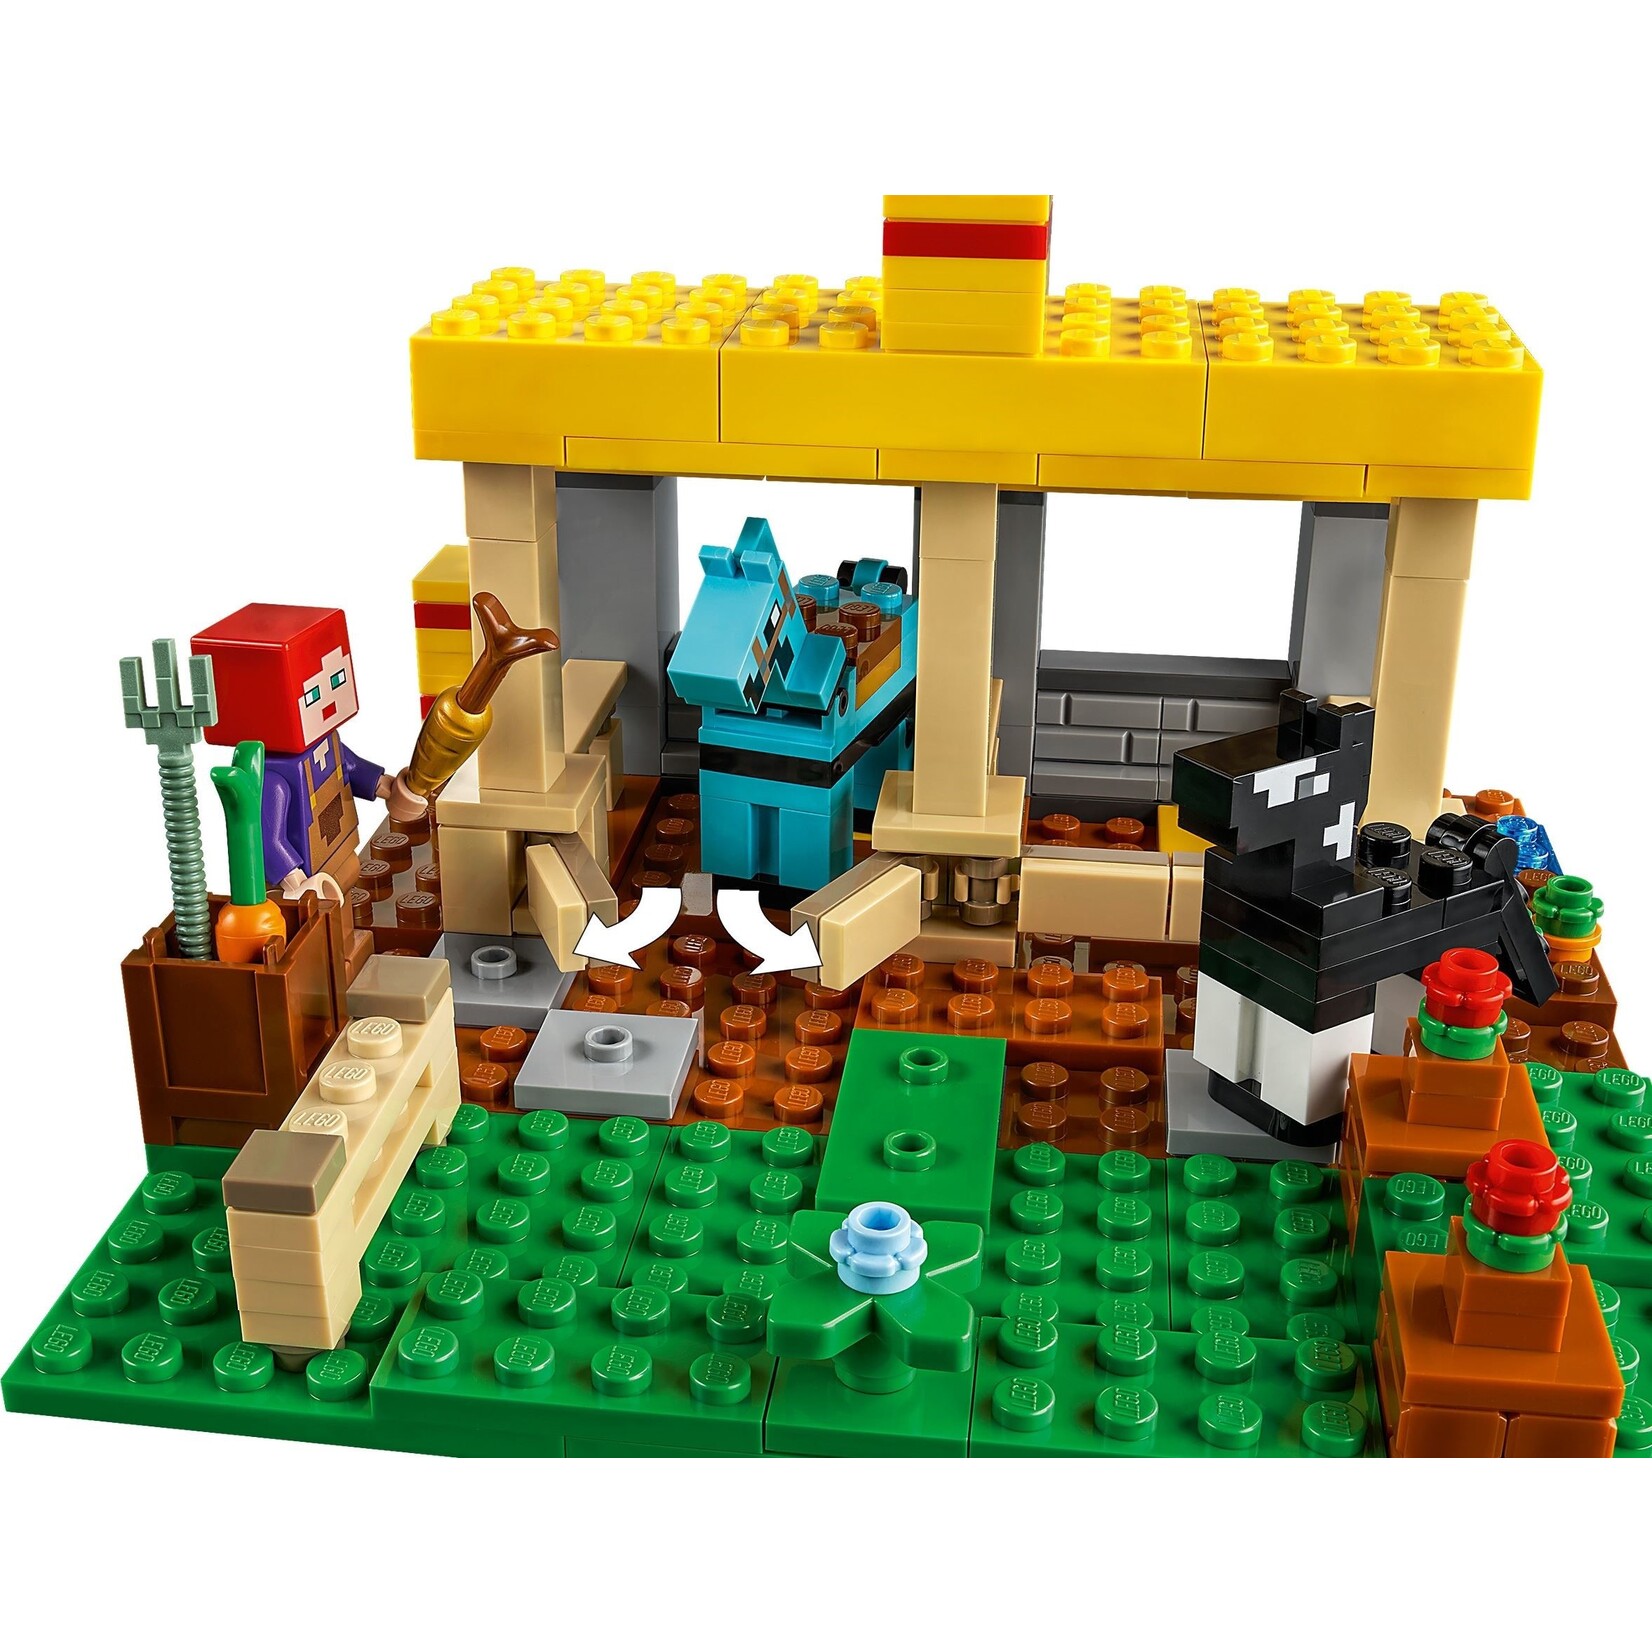 LEGO De Paardenstal - 21171